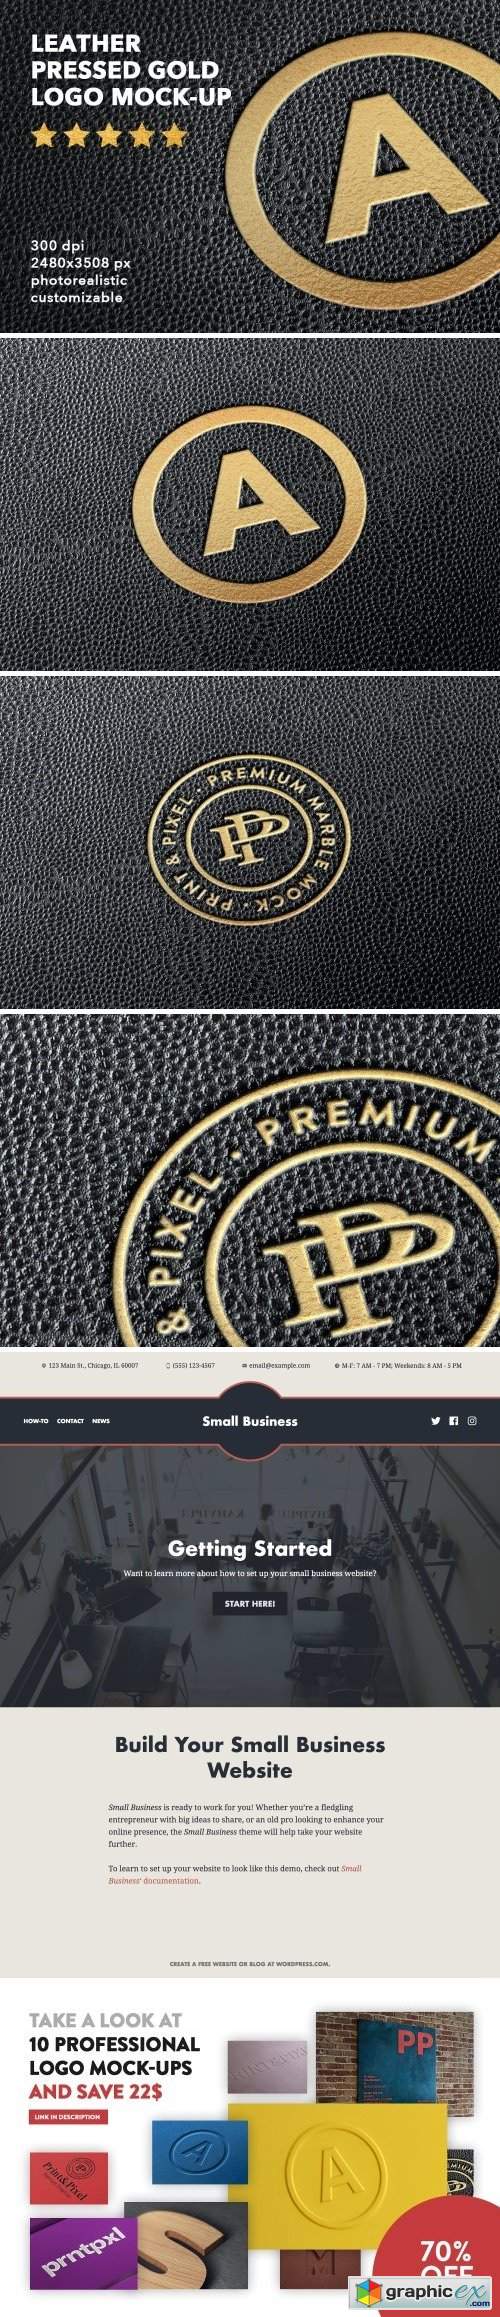 Leather pressed gold logo mock-up